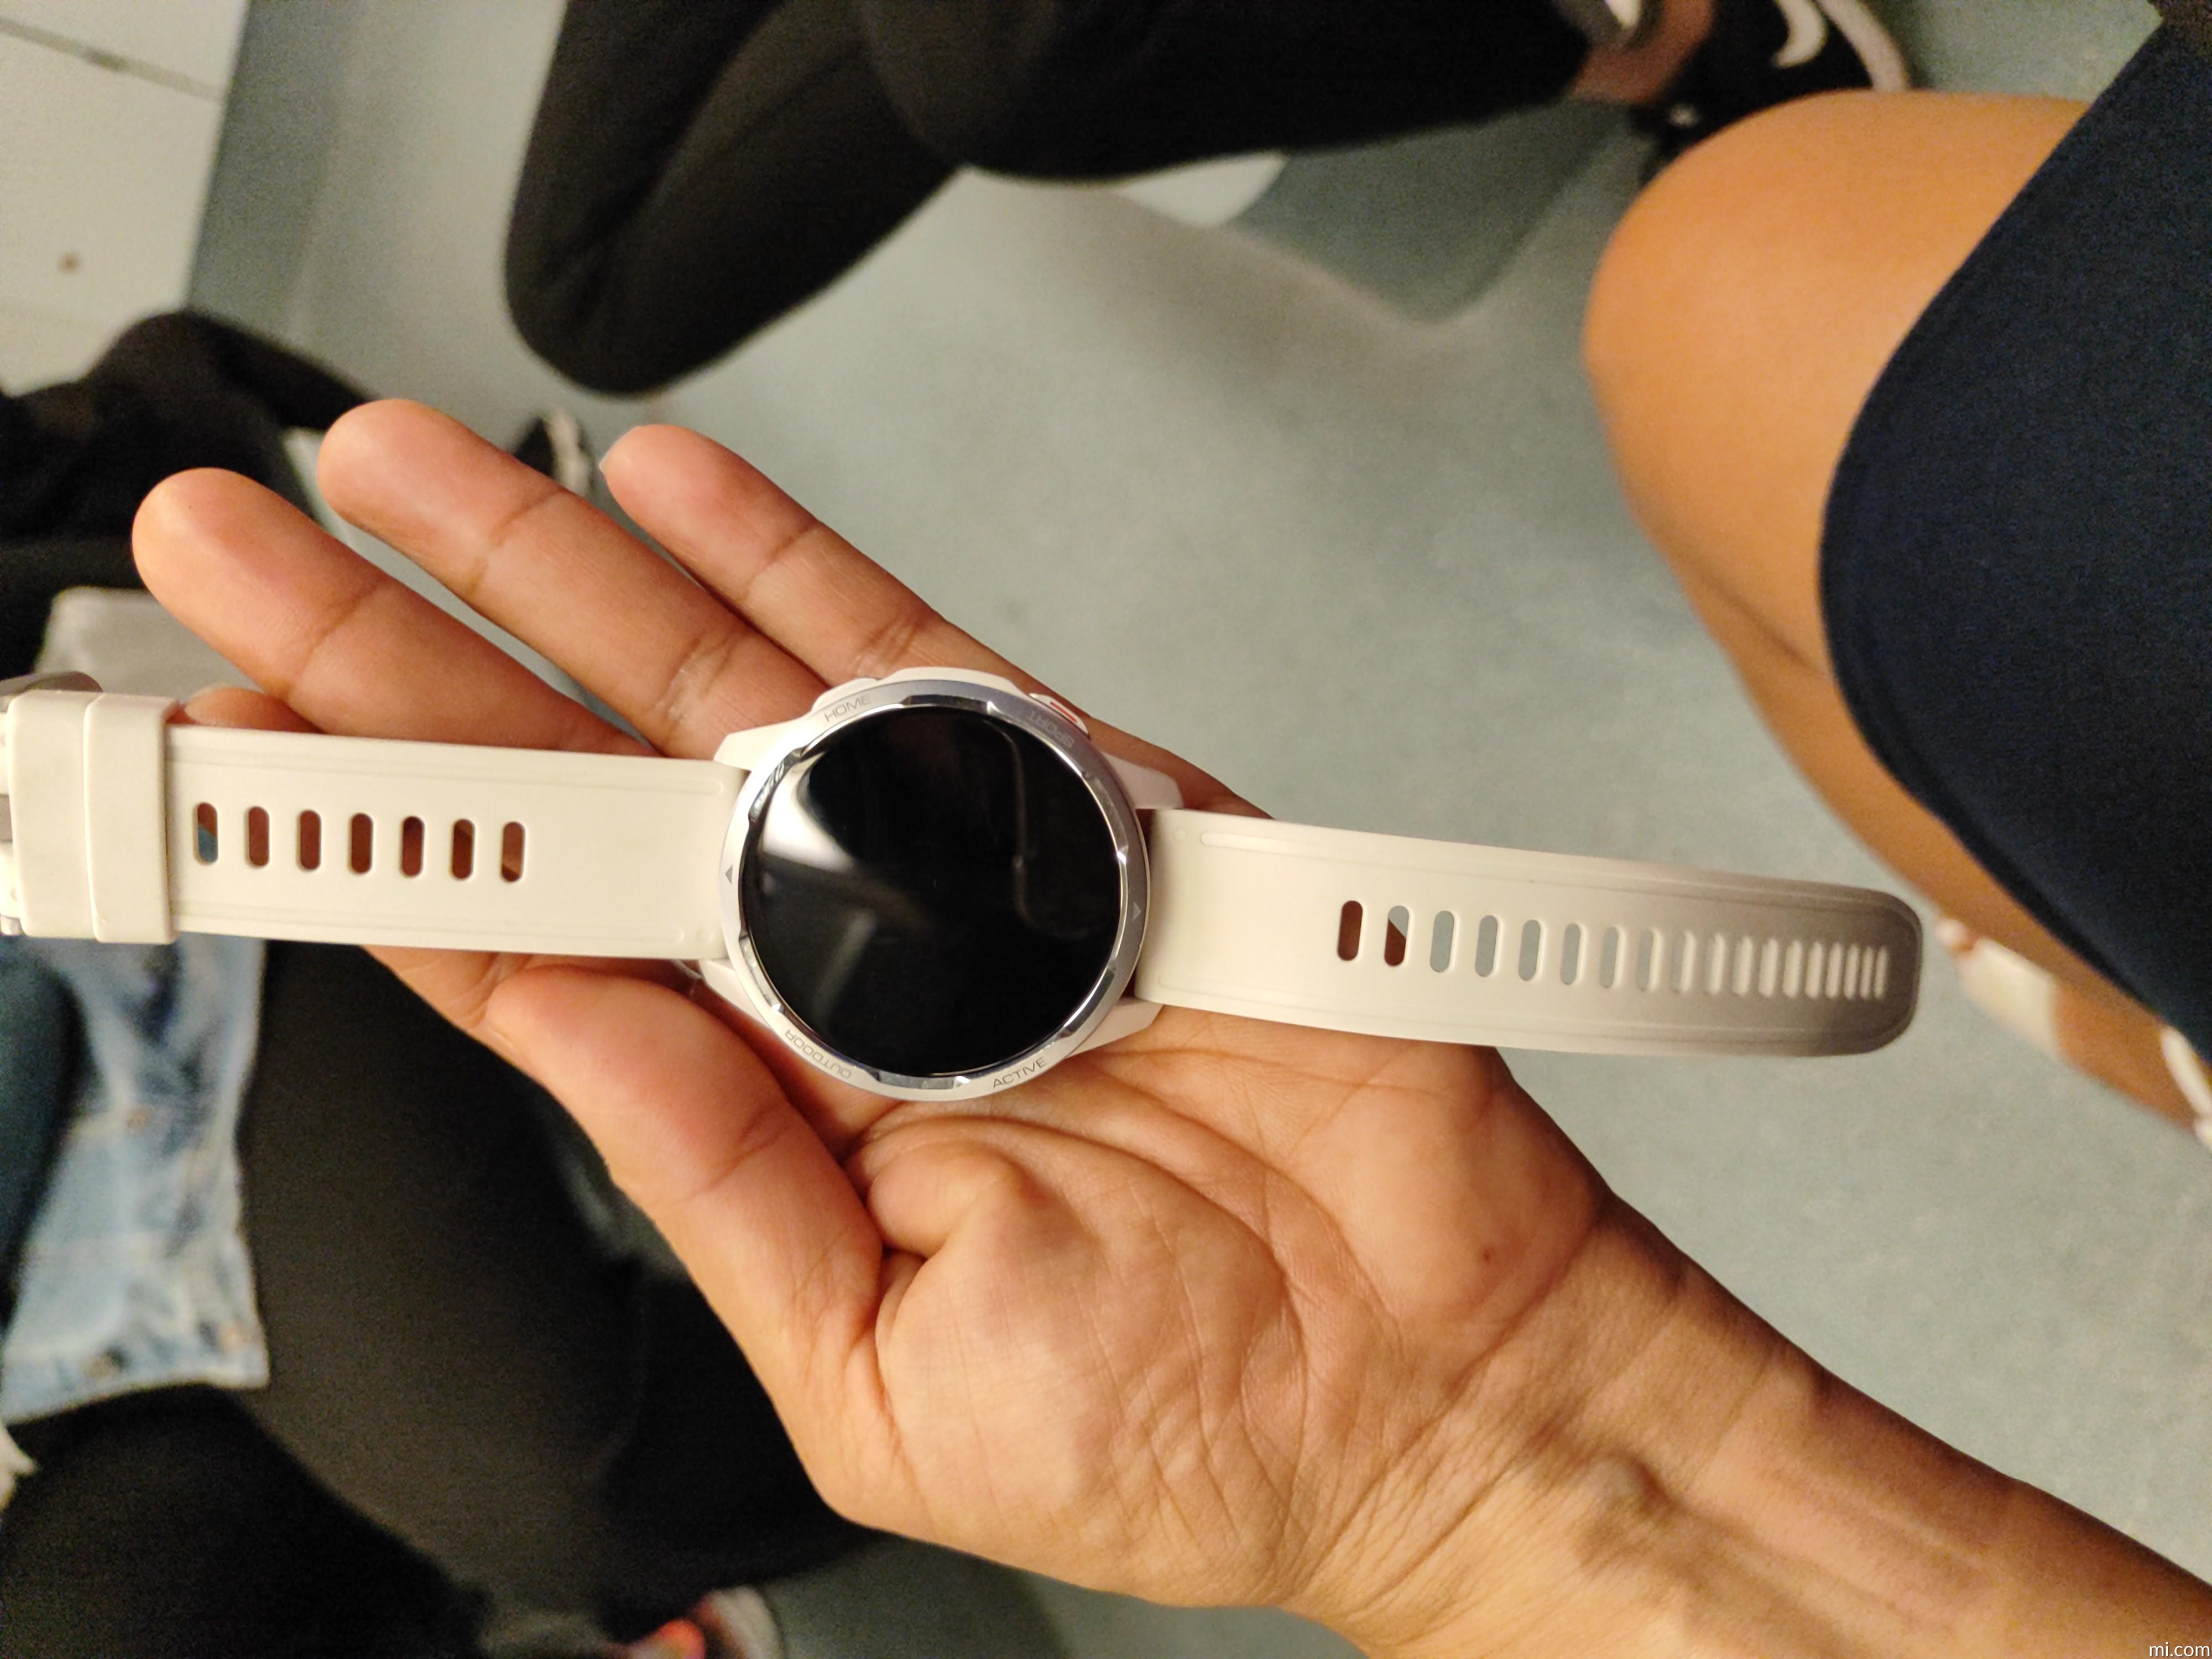  Xiaomi Mi Smart Watch Lite - Pantalla táctil de 1.4 pulgadas,  resistente al agua a 5 ATM, batería de 9 días, GPS, modo deportivo 11,  pasos, monitor de sueño y ritmo